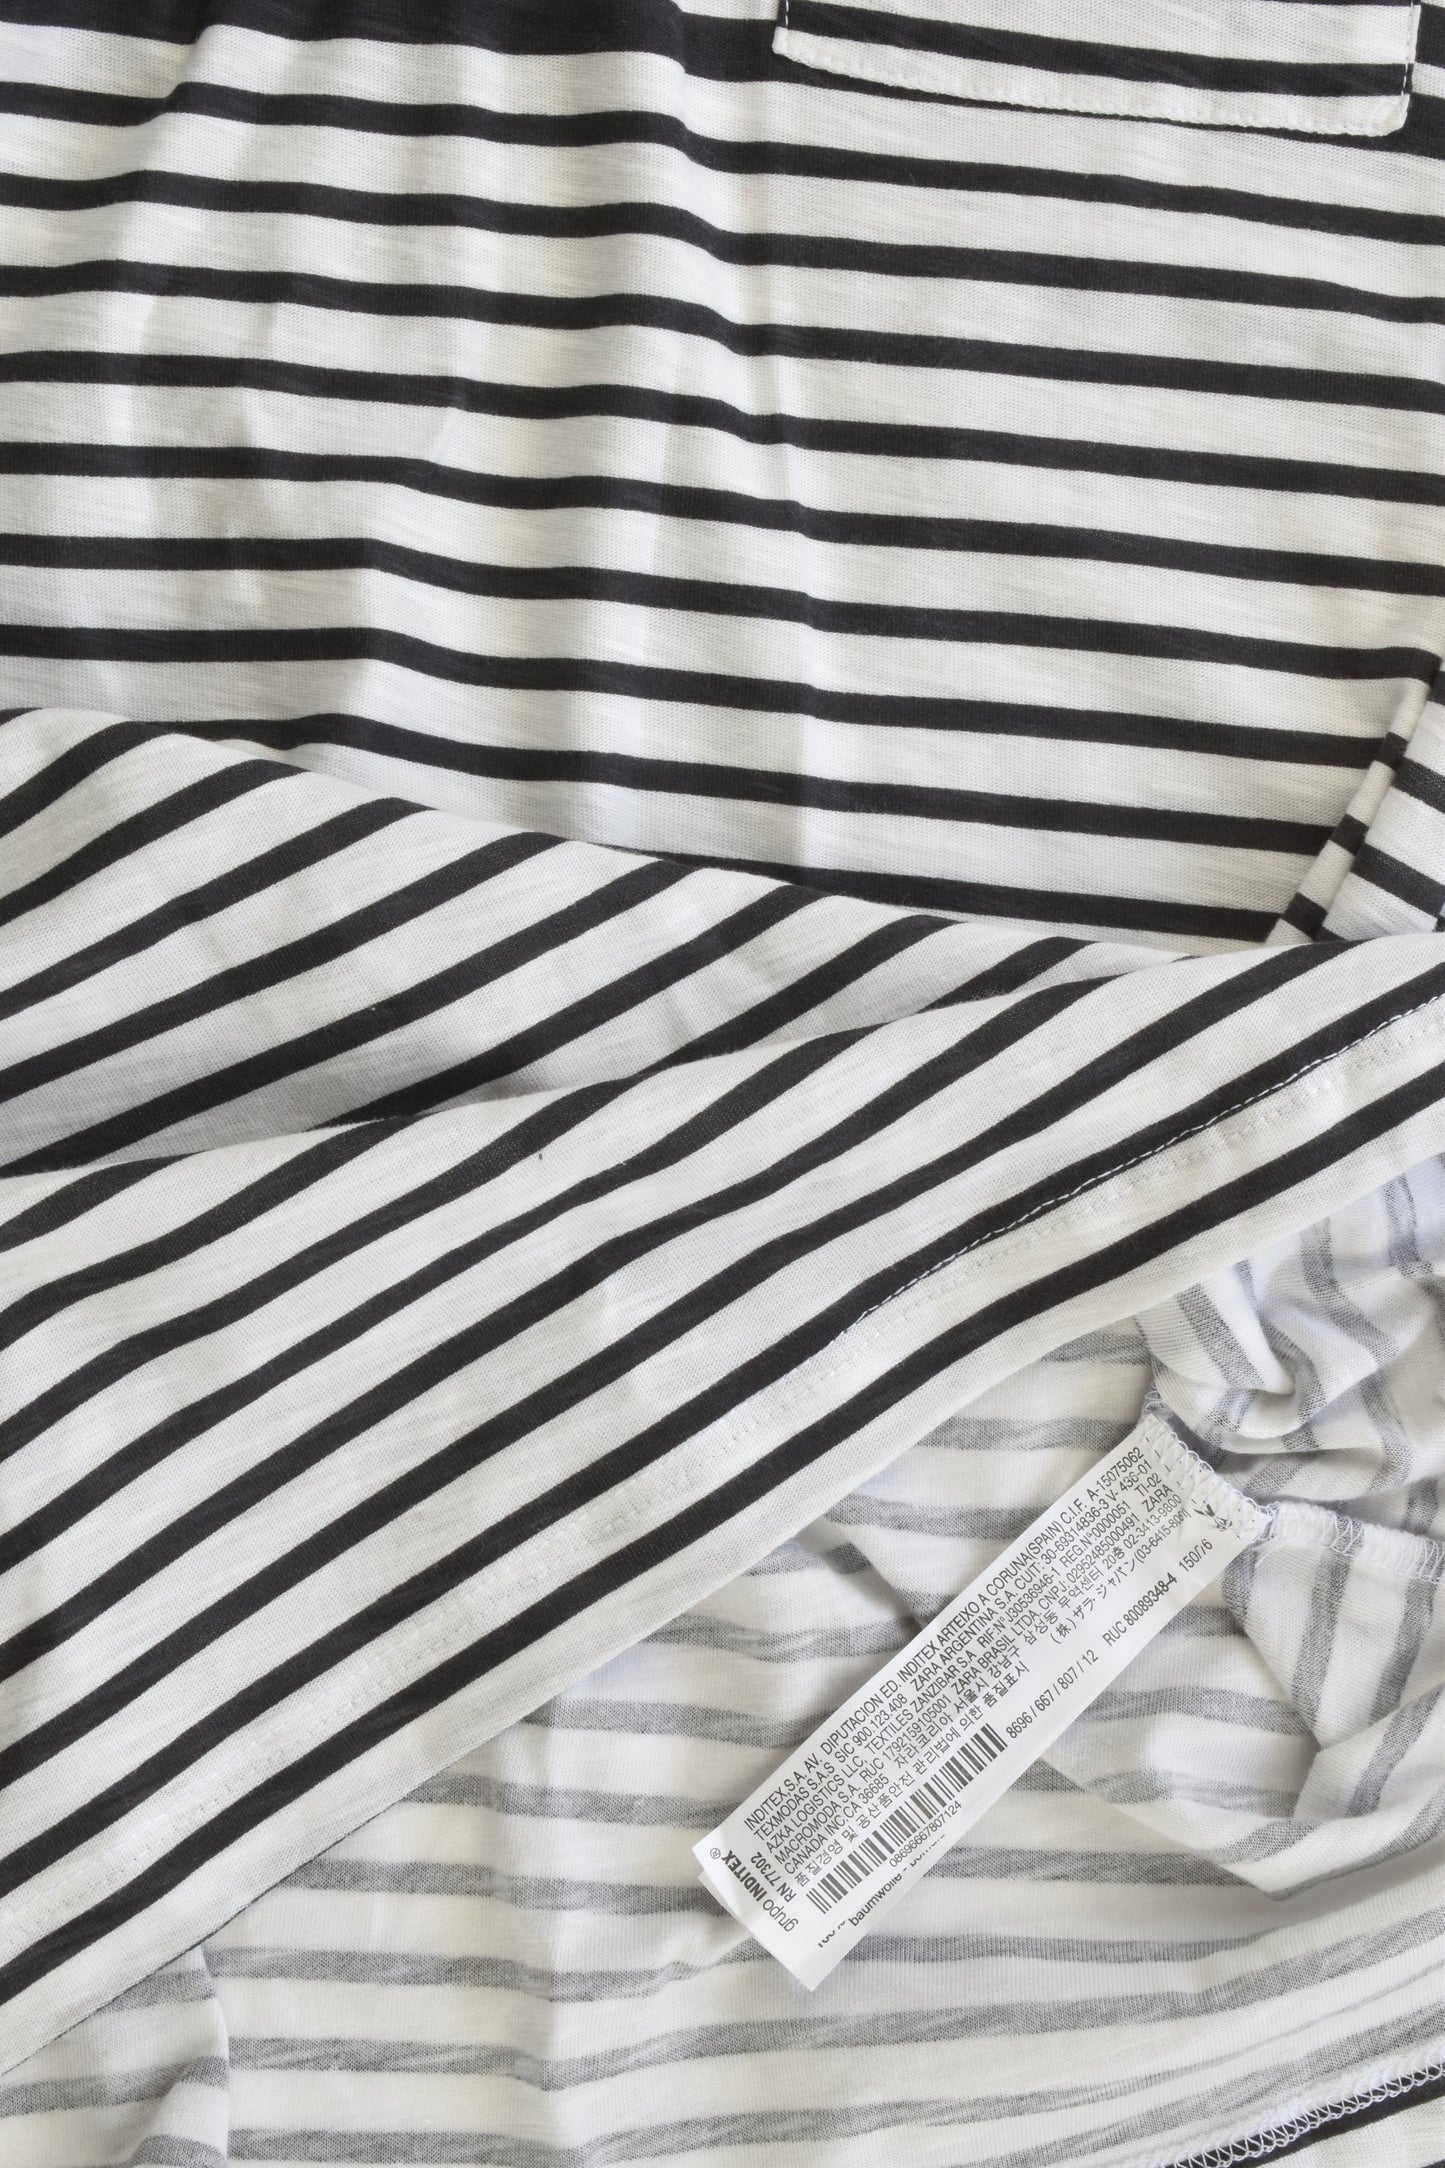 NEW Zara Boys Size 11/12 (152 cm) Striped T-shirt